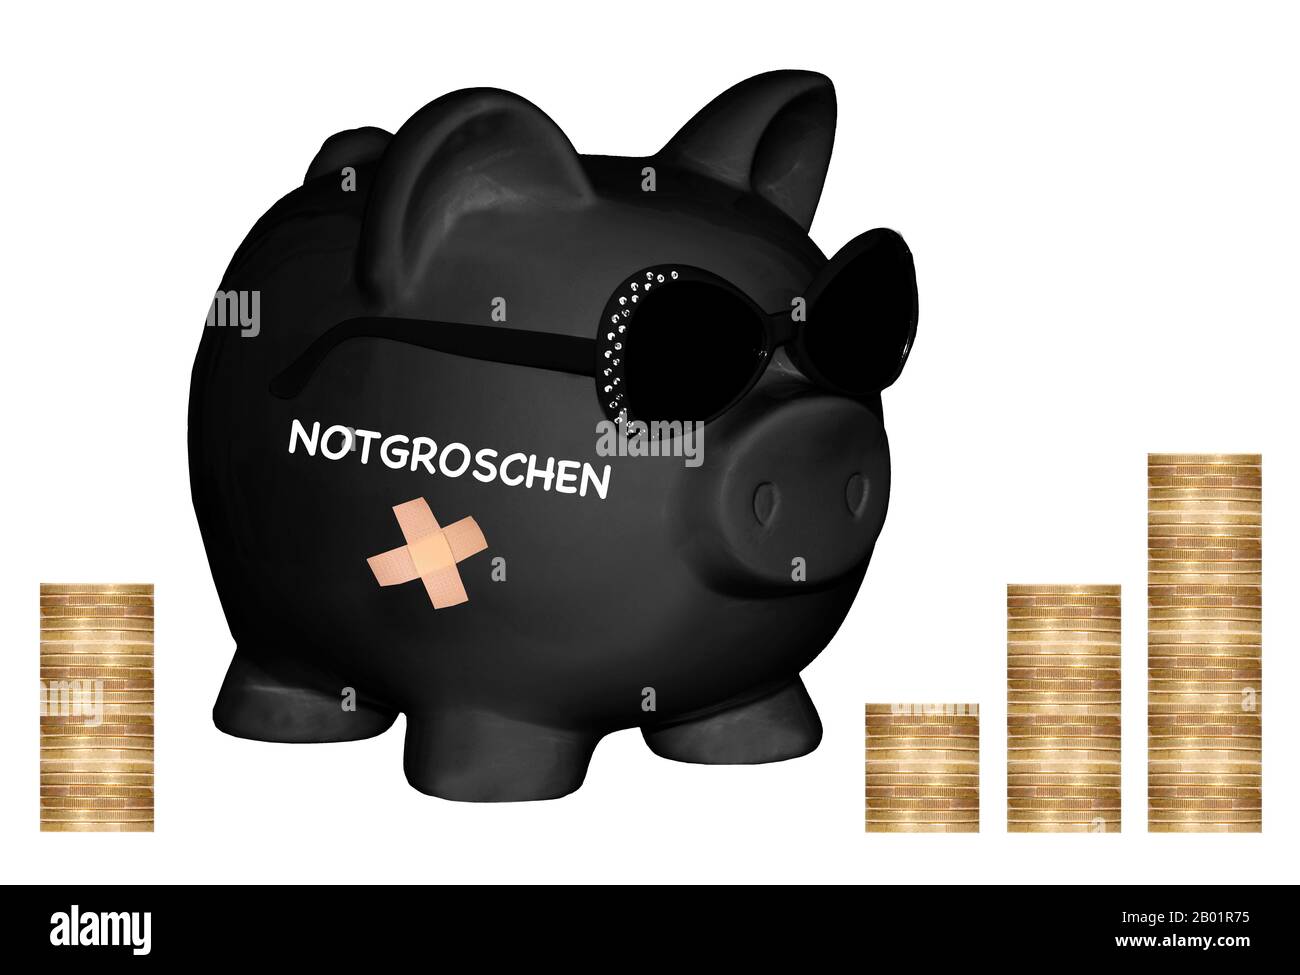 , banco negro piggy con gafas de sol y letras Notgroschen, huevo nido, pilas de monedas en el fondo, componiendo Foto de stock